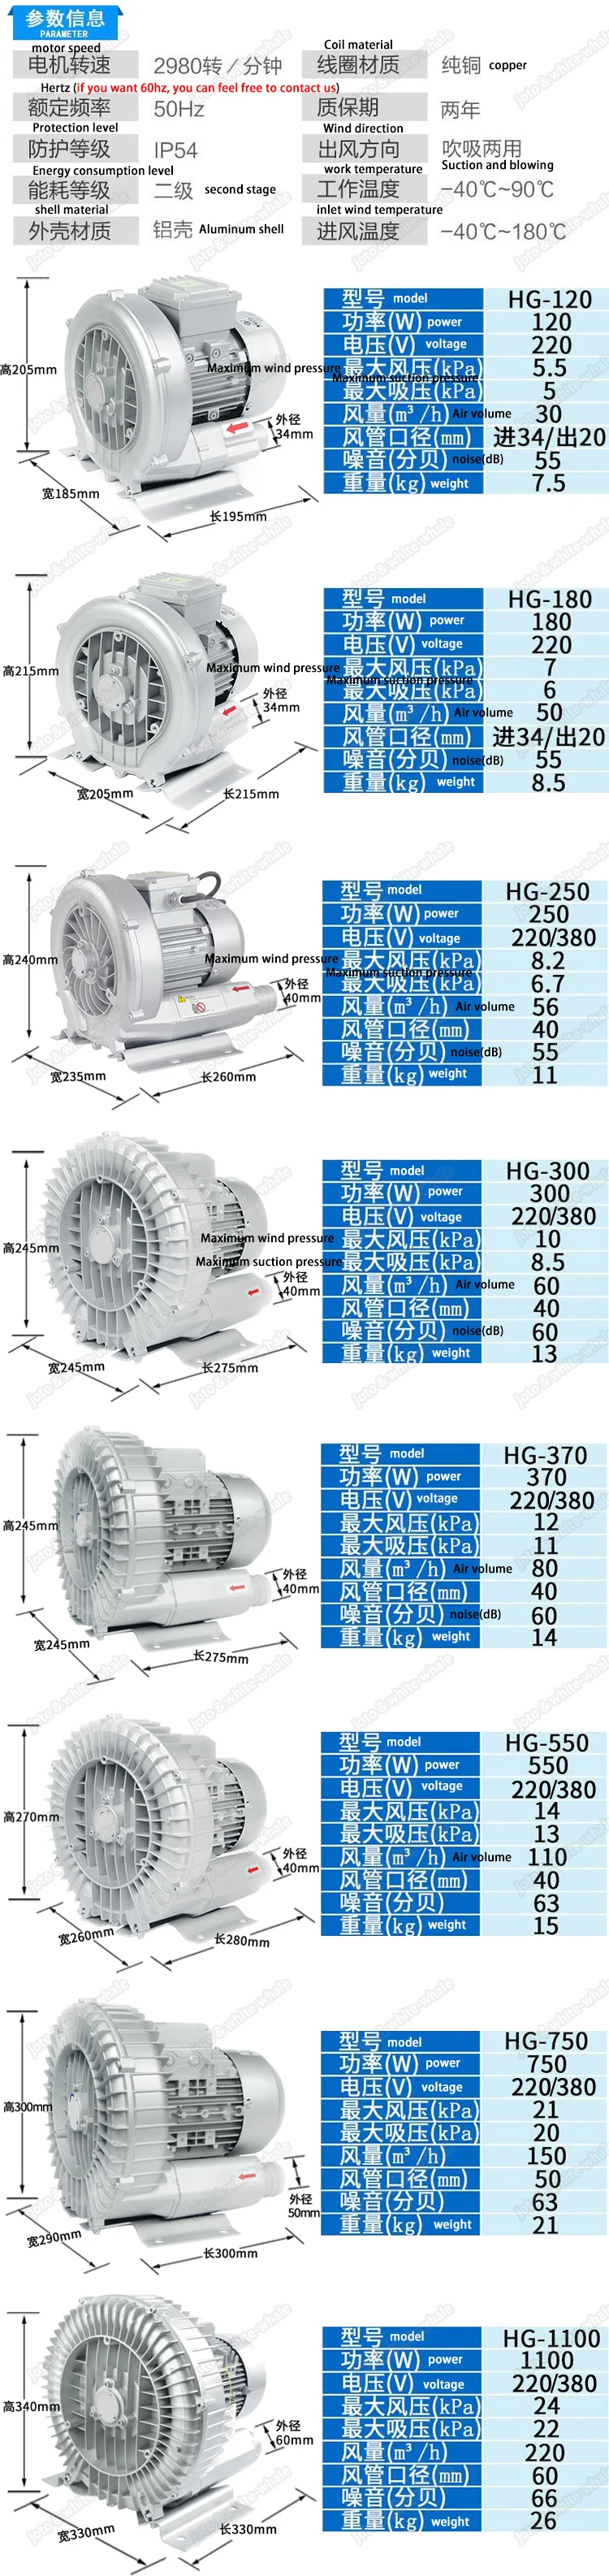 HG-550 вихревой вентилятор, аквариумный воздушный насос, электромагнитный воздушный компрессор, аквариум кислорода